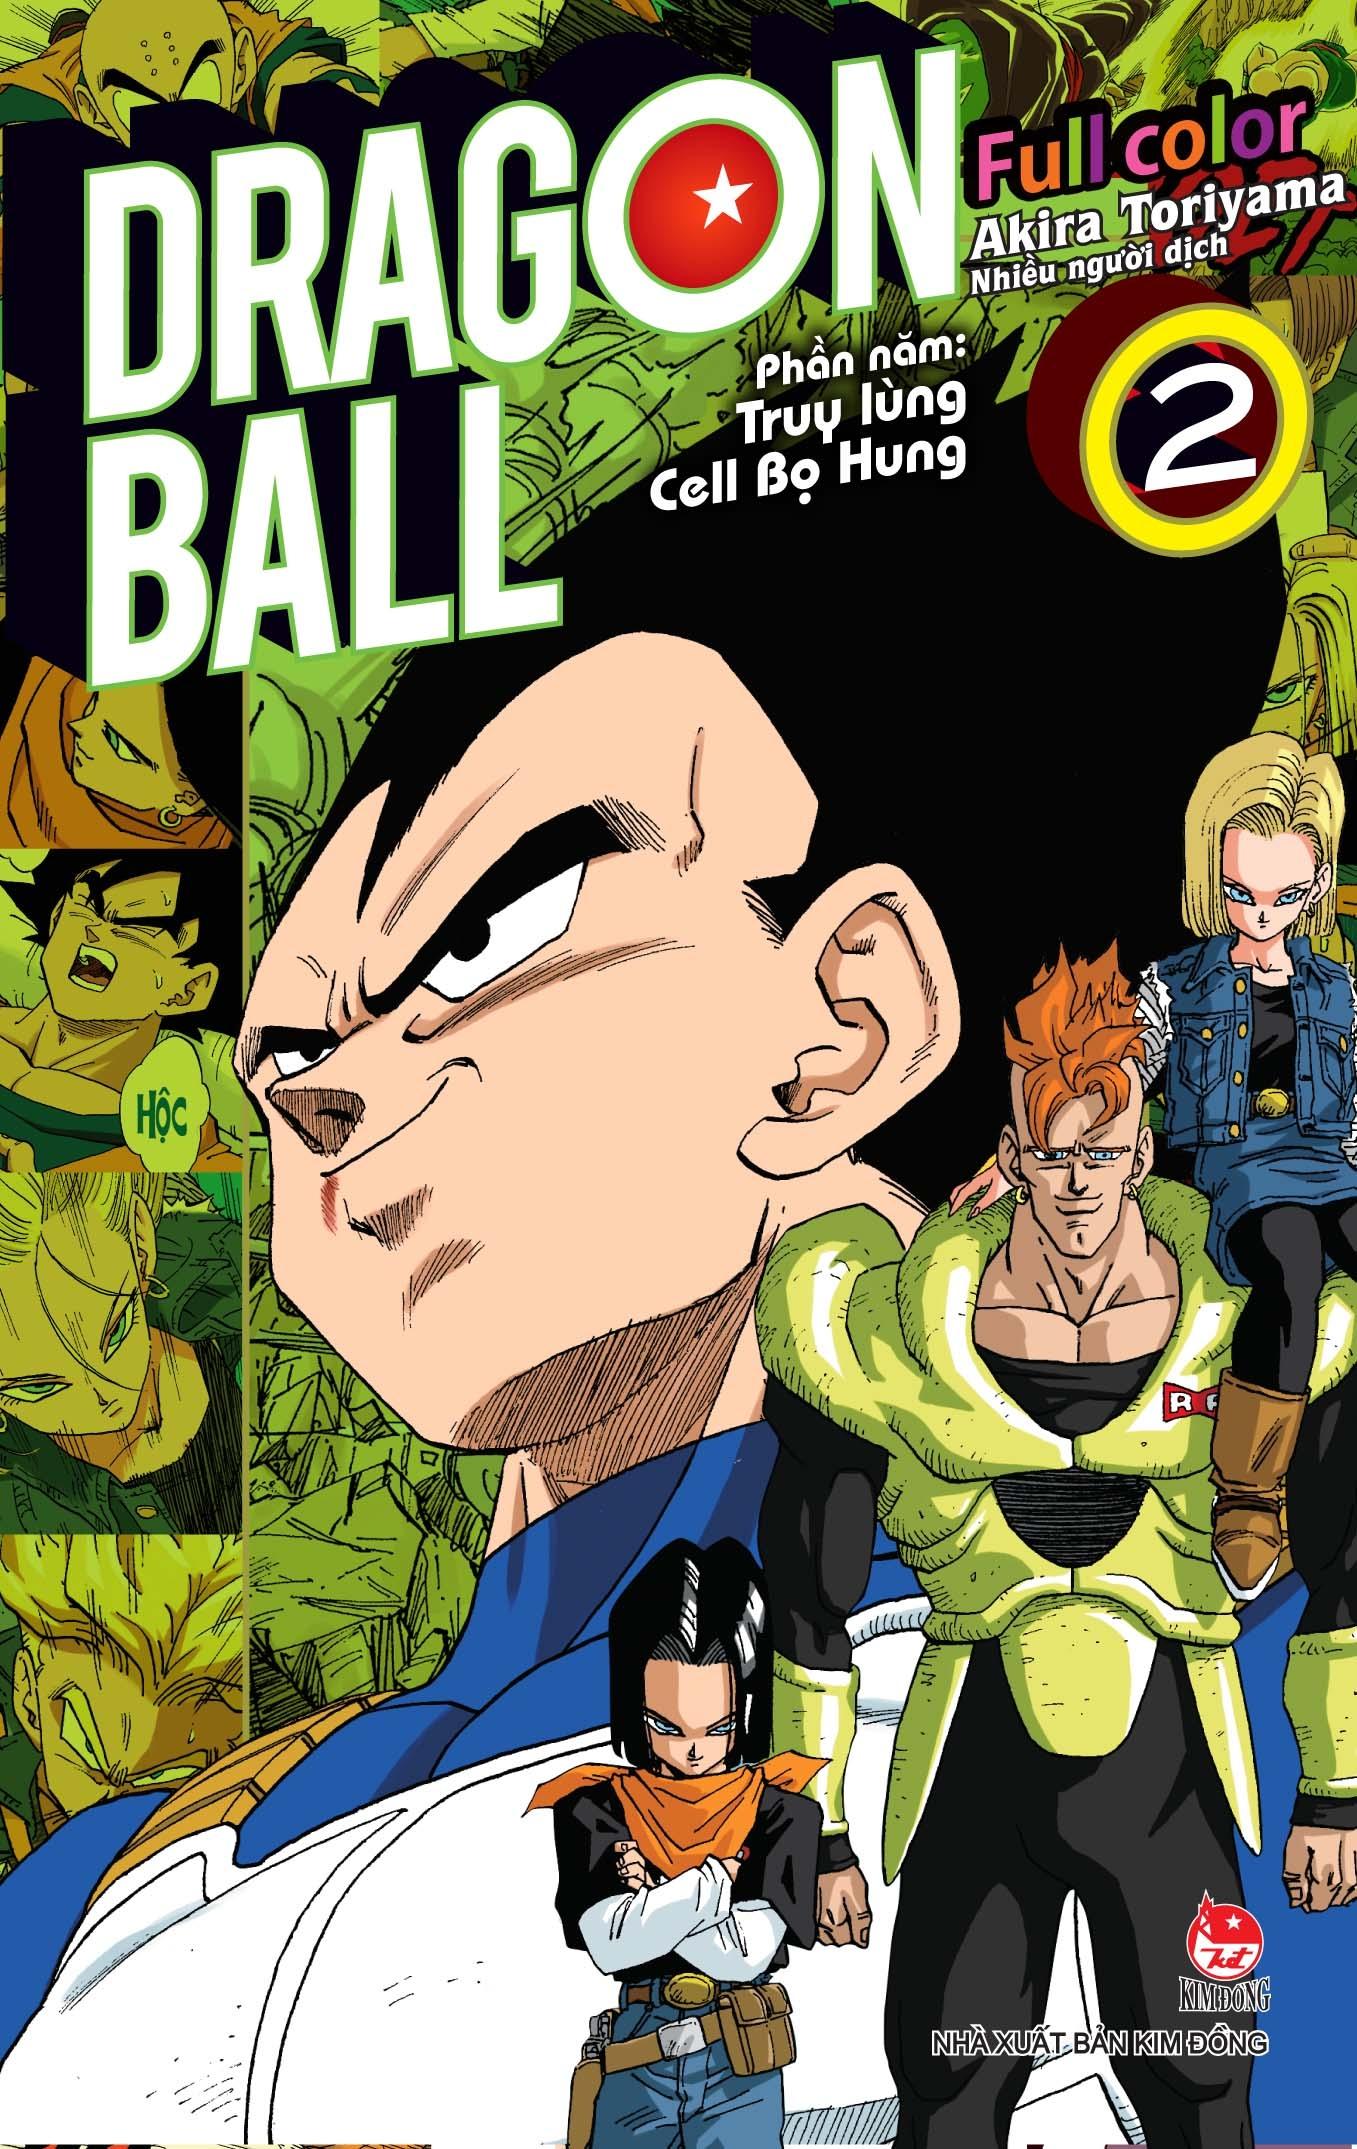 Dragon Ball Full Color - Phần Năm: Truy Lùng Cell Bọ Hung - Tập 2 - Tặng Kèm Ngẫu Nhiên 1 Trong 2 Mẫu Postcard Nhân Vật